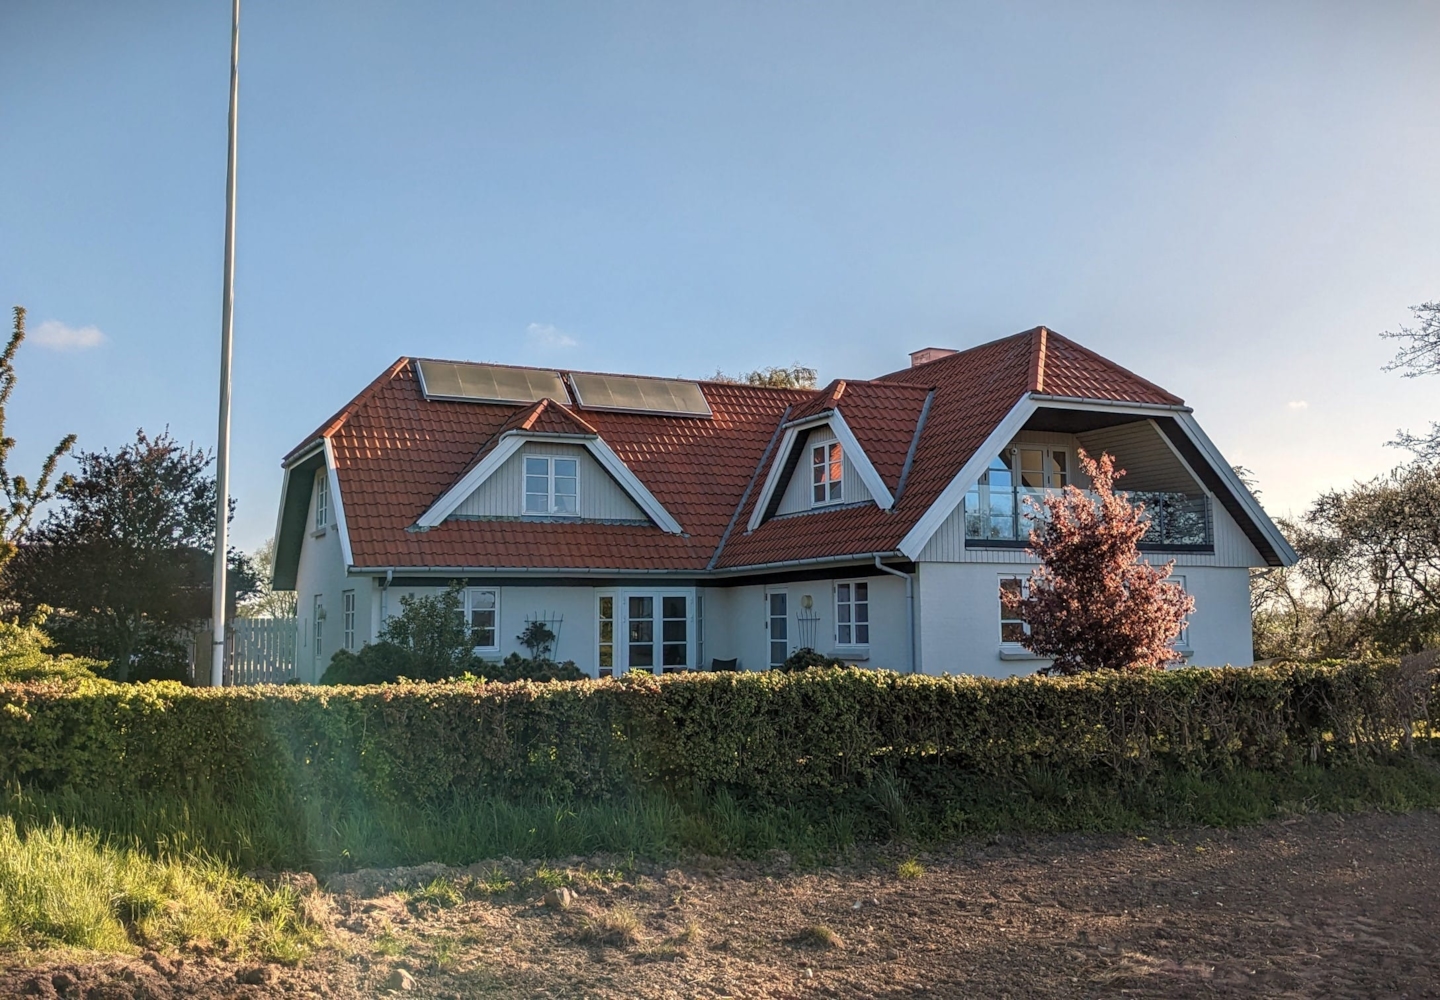 Strandhuse 4, 5762 Vester Skerninge